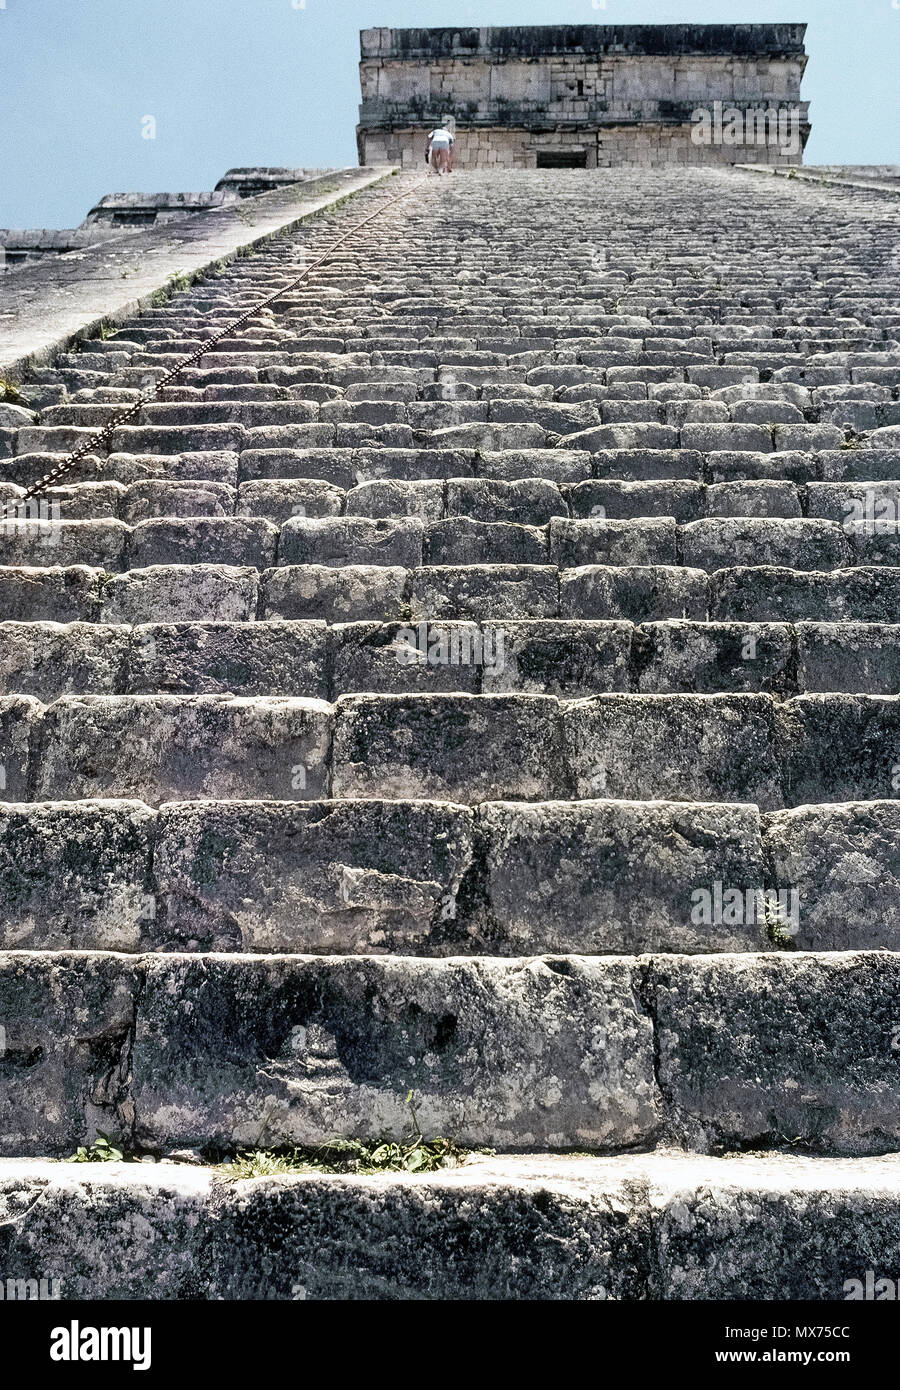 Un basso angolo di vista guardando la maggior parte dei 91 ripidi passaggi di calcare che salgono verso l'alto di El Castillo (Castello), noto anche come tempio di Kukulcan, più famose rovine Maya in antico sito archeologico di Chichen Itza sulla penisola dello Yucatan in Messico. Avvicinandosi al vertice è un turista che sta salendo a 45 gradi scala di questa piramide a gradini tenendo premuto su una lunga catena di metallo per la sicurezza. Fin da quando un alpinista cadde alla sua morte nel 2006, i visitatori non sono più ammessi a salire il 99 piedi di altezza (30 metri di struttura). Il pre-Colombiano landmark è un sito Patrimonio Mondiale dell'UNESCO. Foto Stock